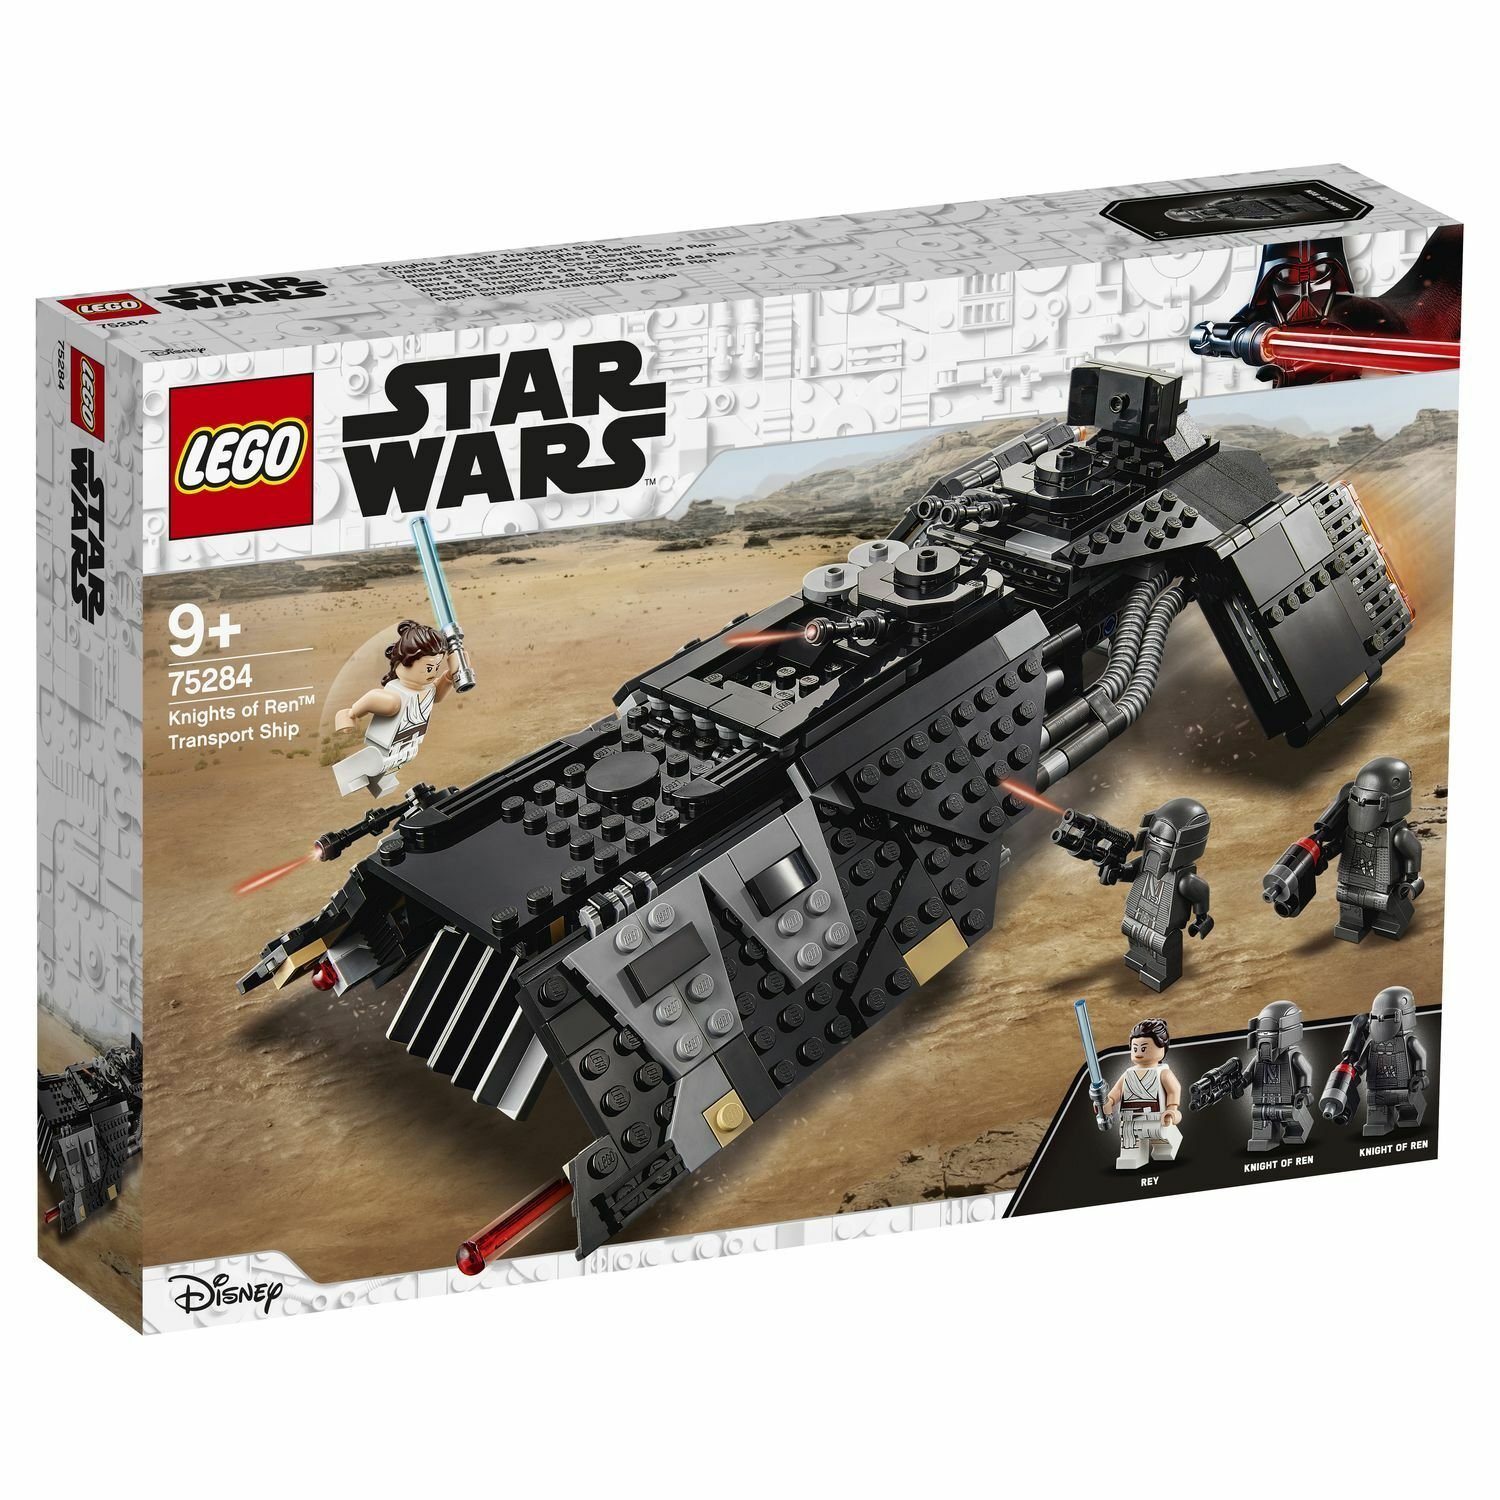 Lego Star Wars 75284 Транспортный корабль рыцарей Рена